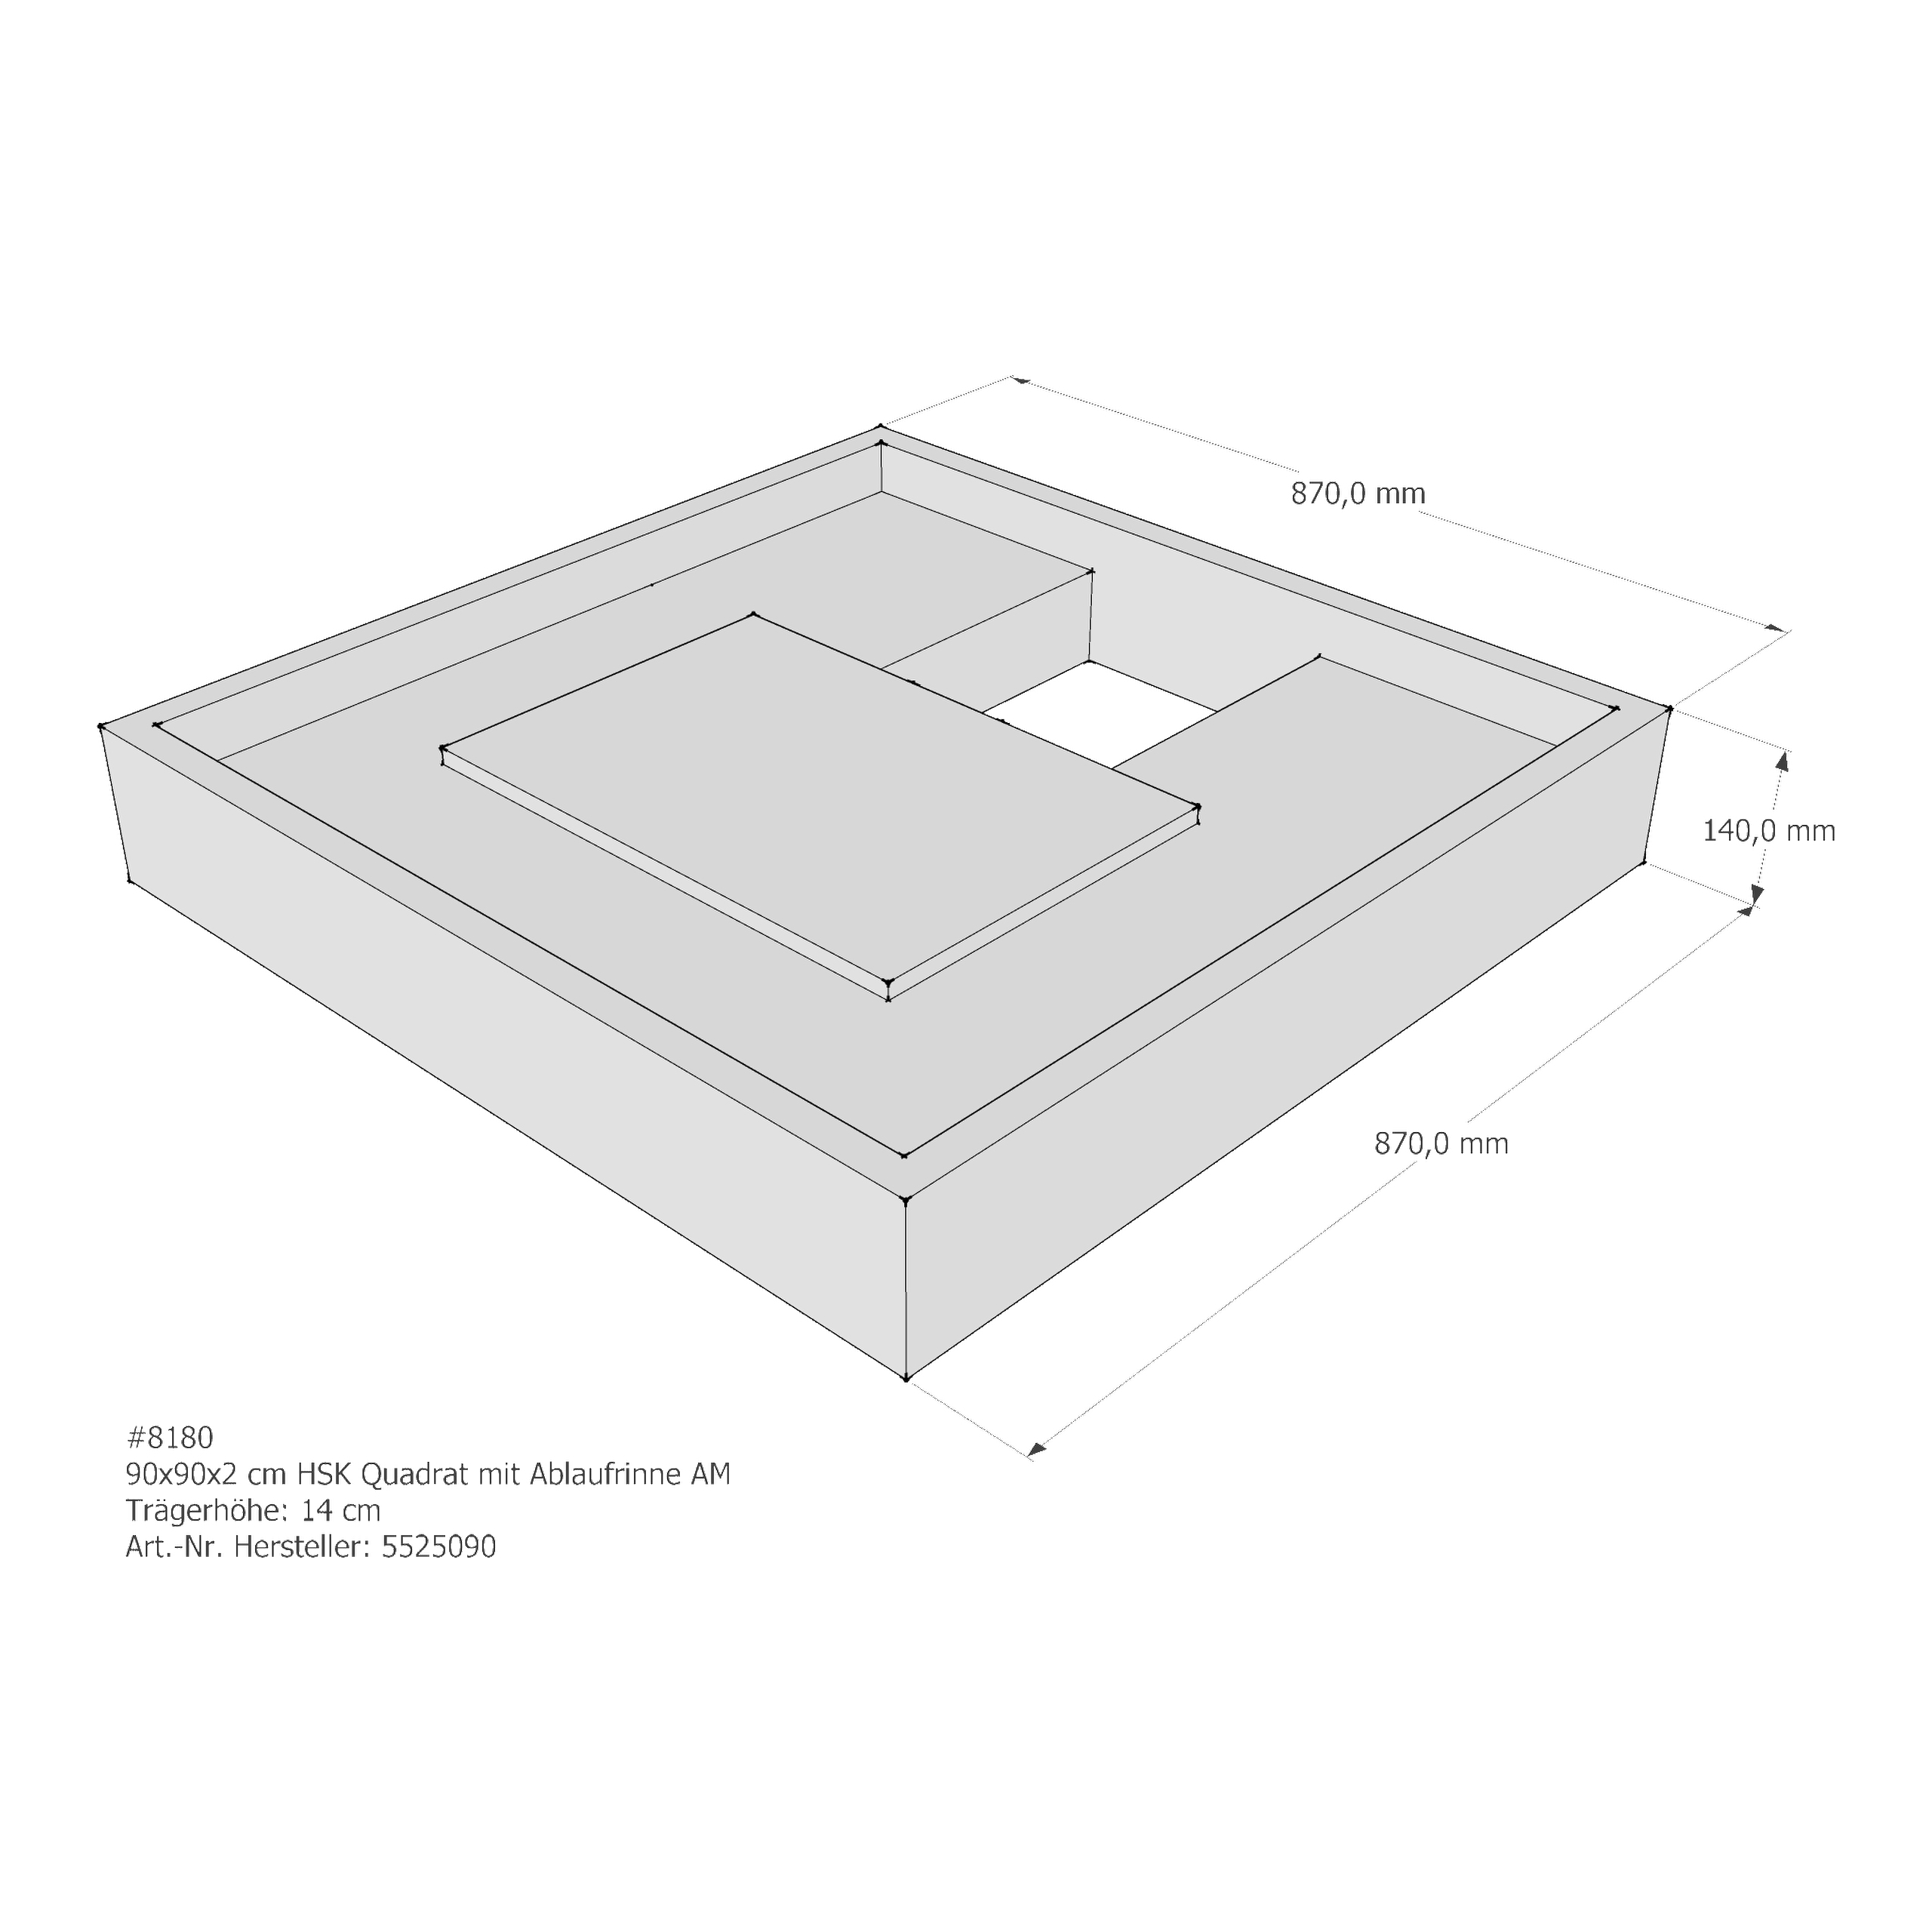 Duschwannenträger für HSK Quadrat Ablaufrinne 90 × 90 × 2 cm